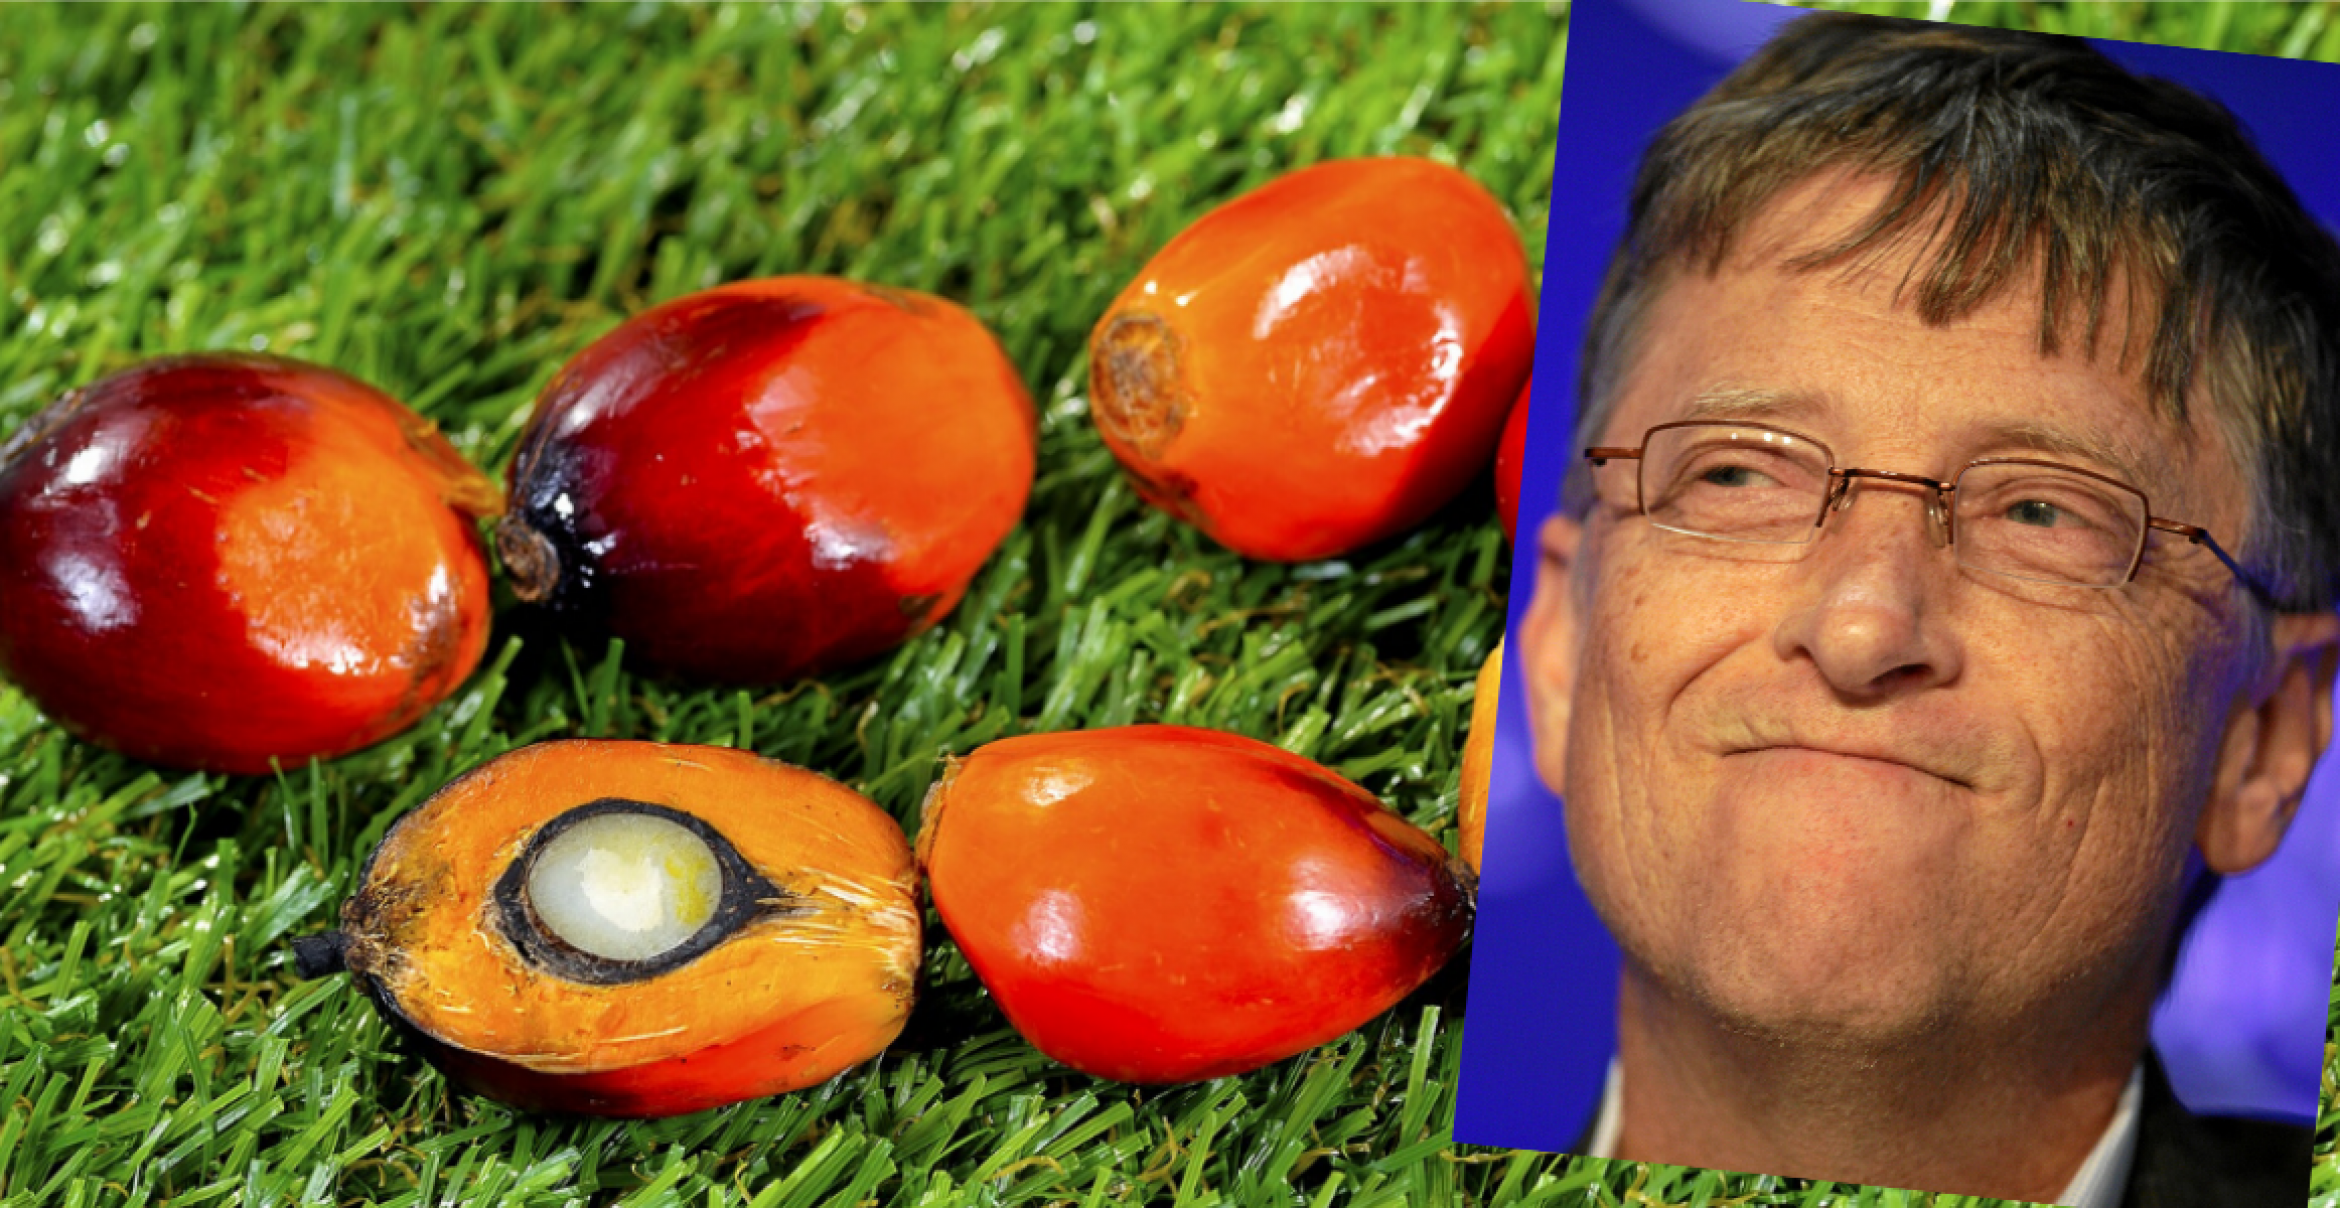 Bill Gates, Jeff Bezos und Mark Zuckerberg investieren in eine synthetische Palmöl-Alternative